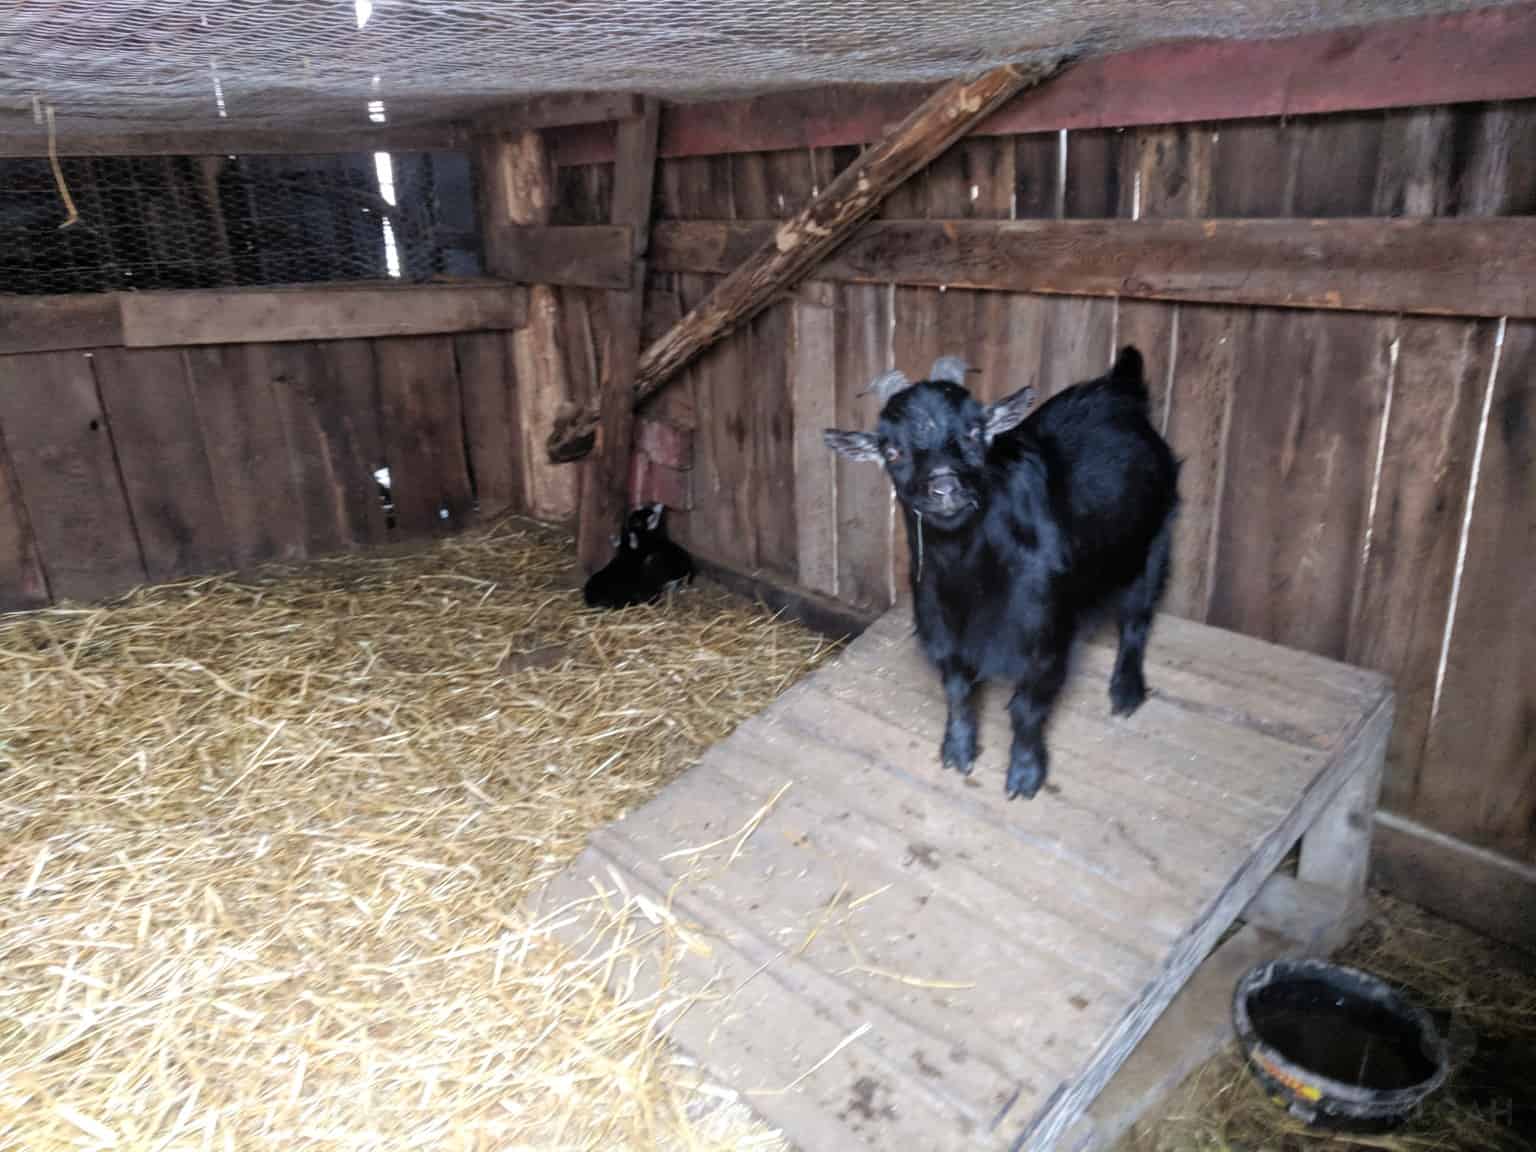 pygmy goat in its pen